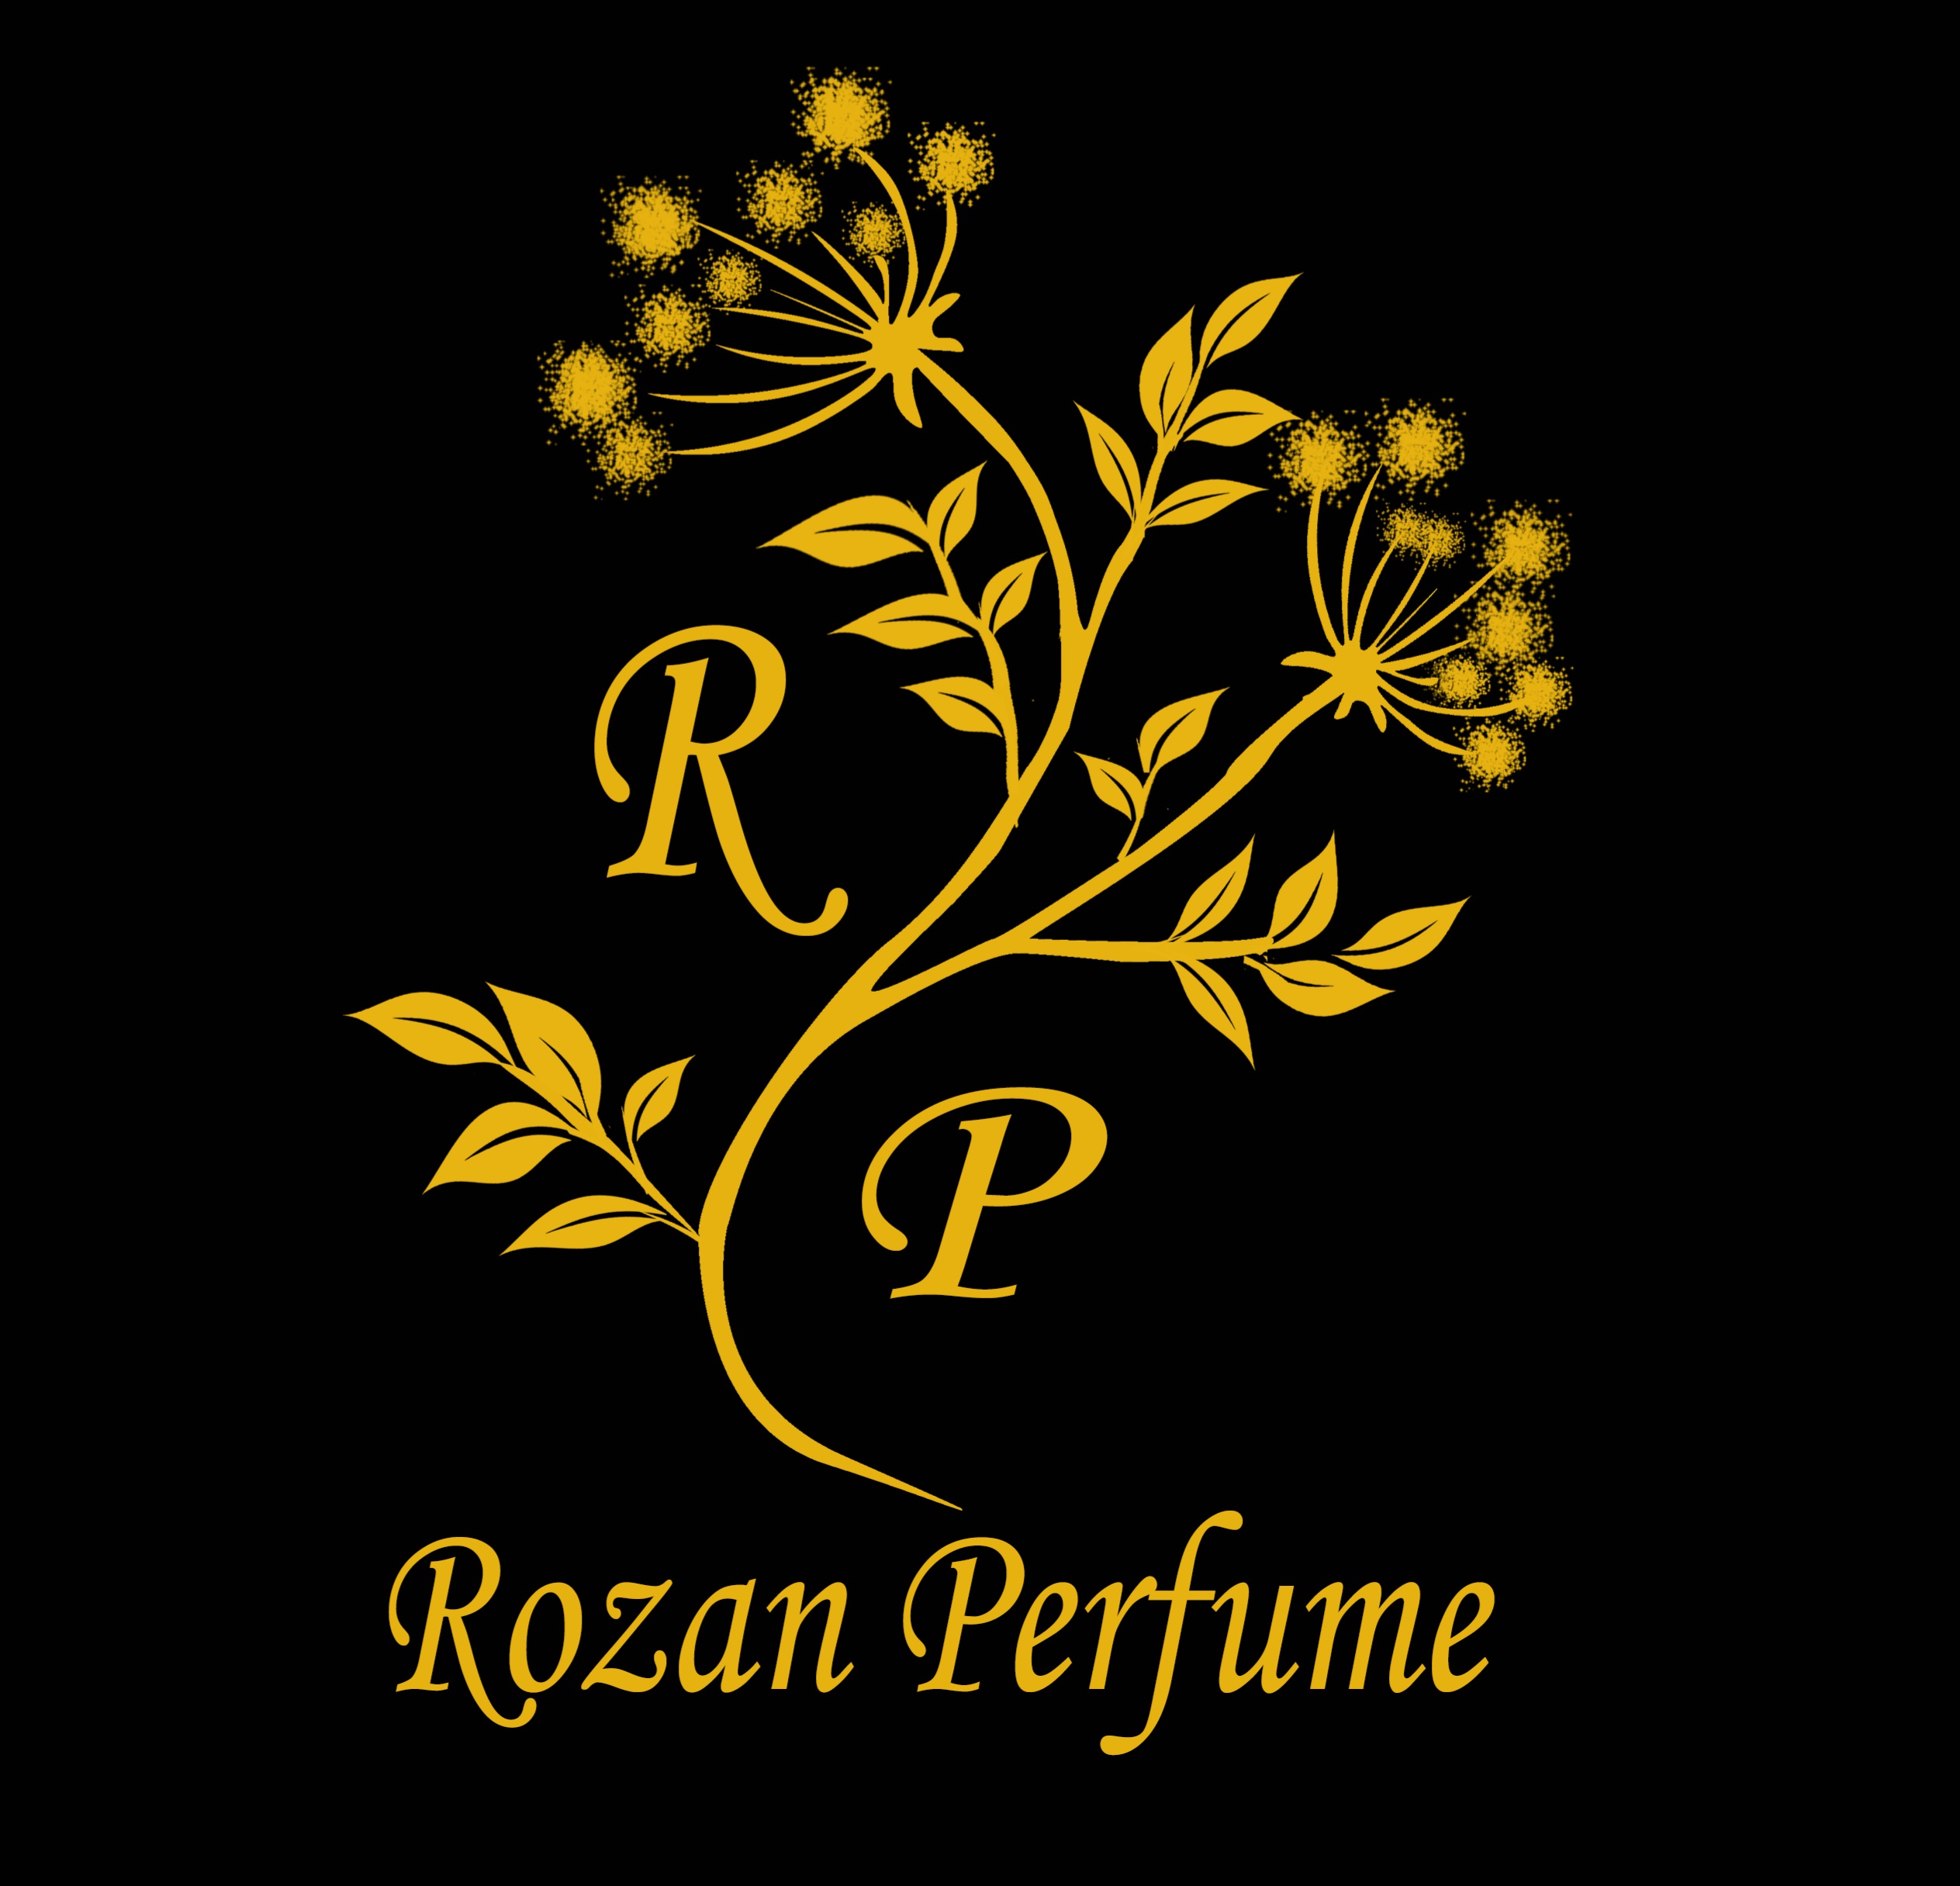 ROZAN PERFUME